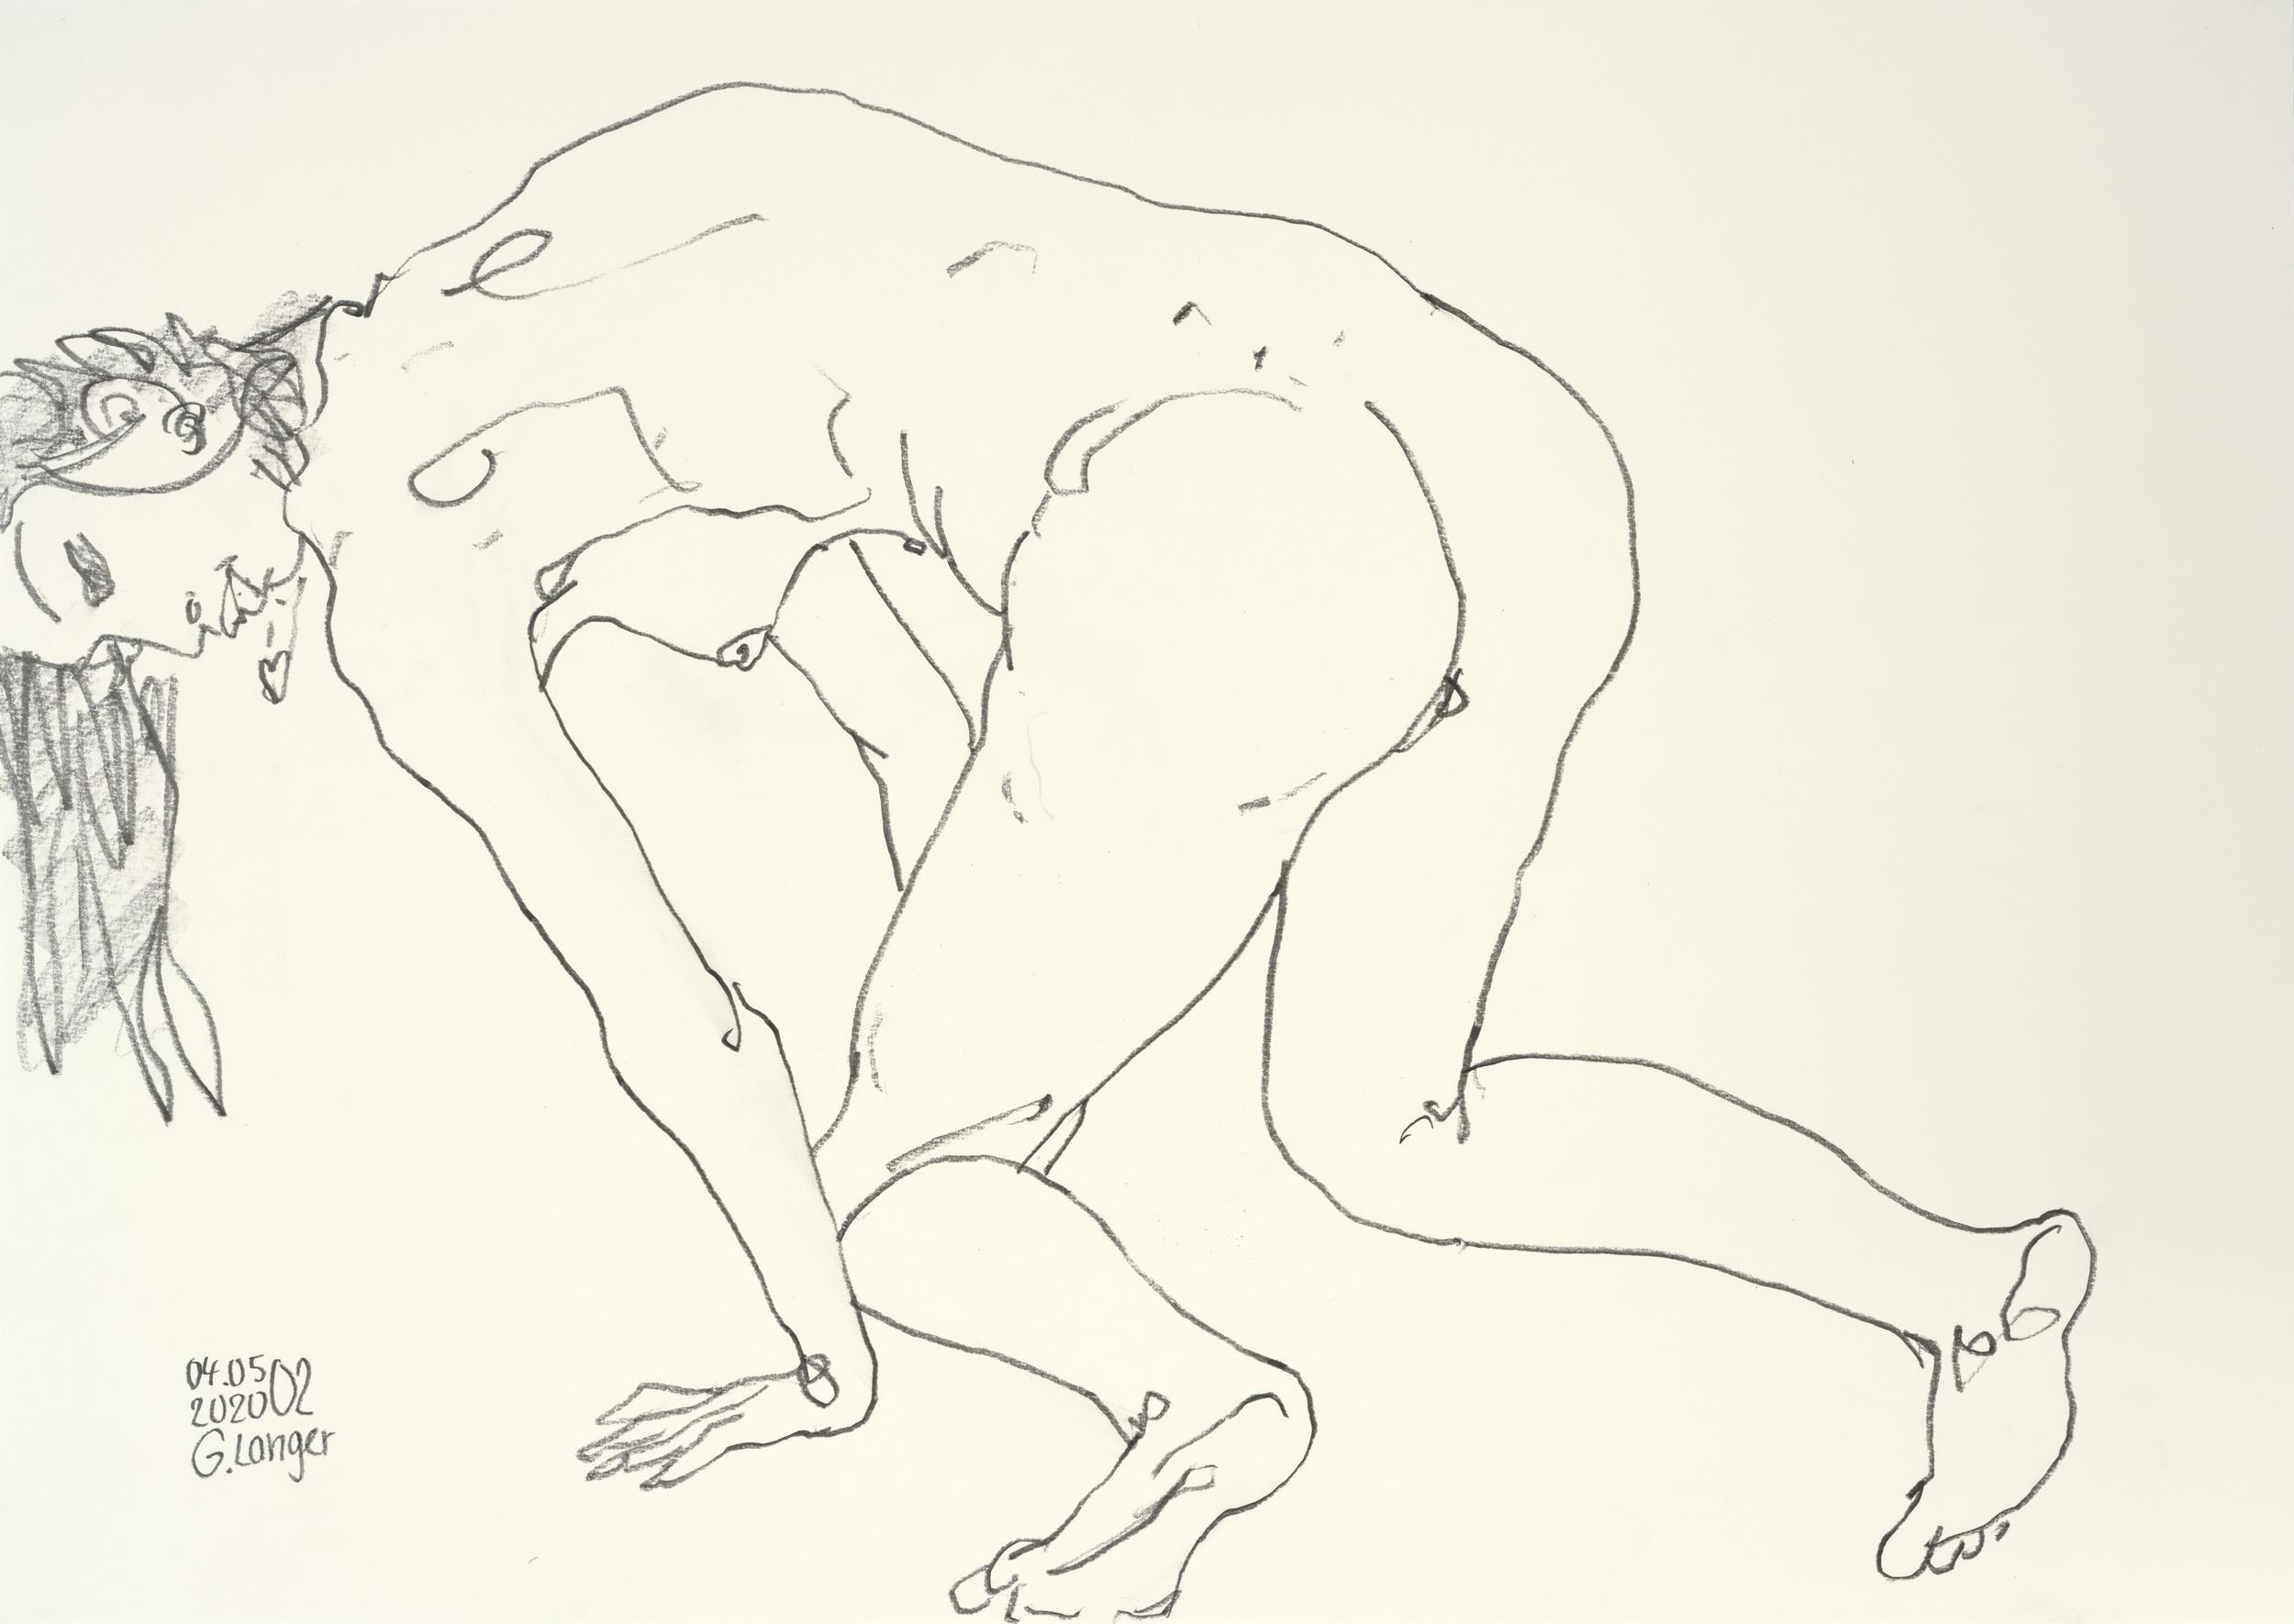 Gunter Langer, Nacktes Mädchen kniend, 2020, Zeichenpapier, 42 x 59 cm